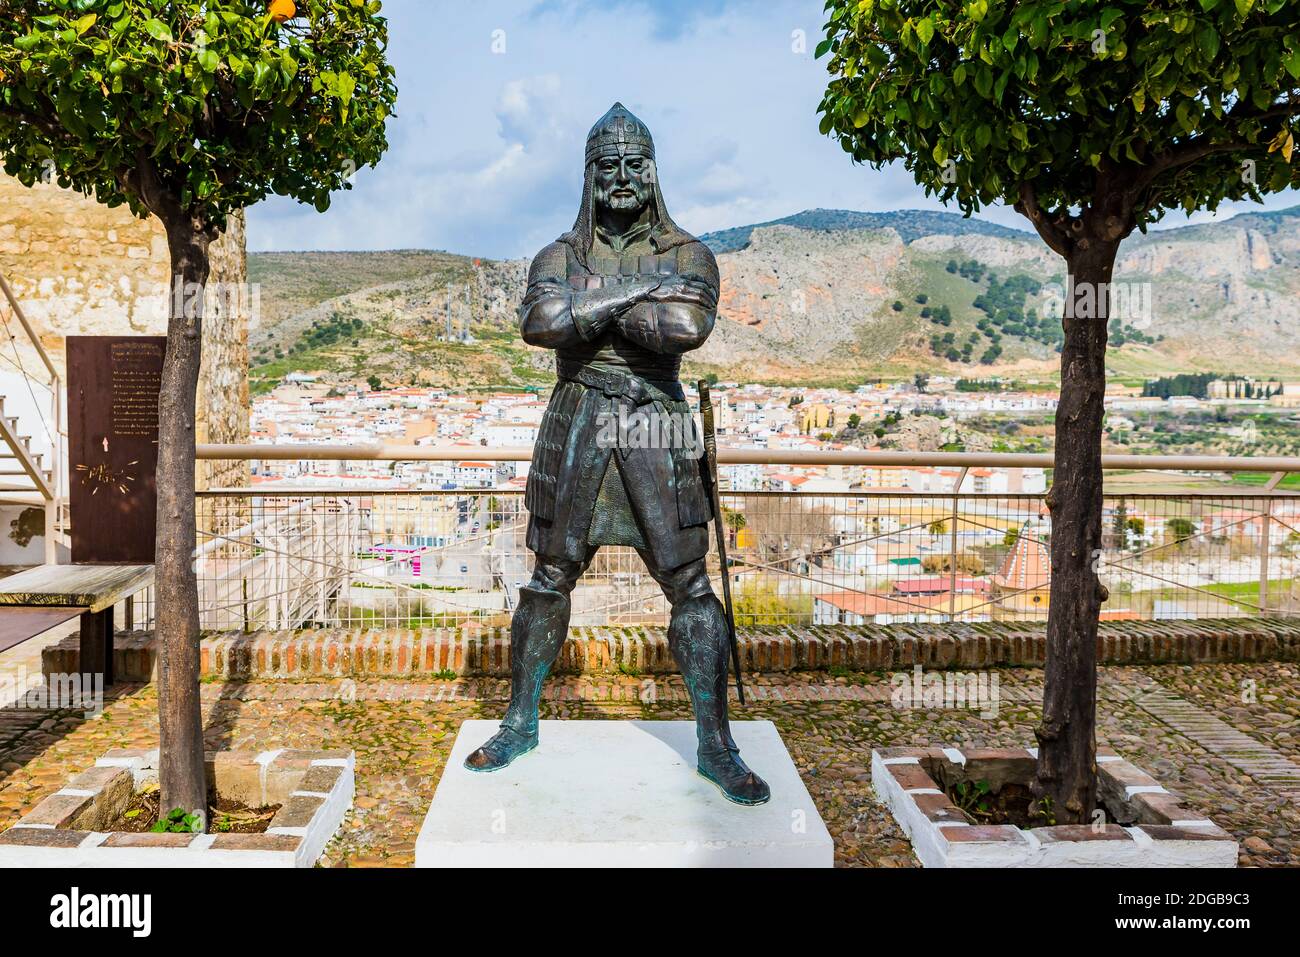 La statua in bronzo di Ali al Attar, Aliatar, guardiano di Loja dal 1462 fino alla sua morte nella battaglia di Lucena, è ricordata per il suo prestigio militare. ACC Foto Stock